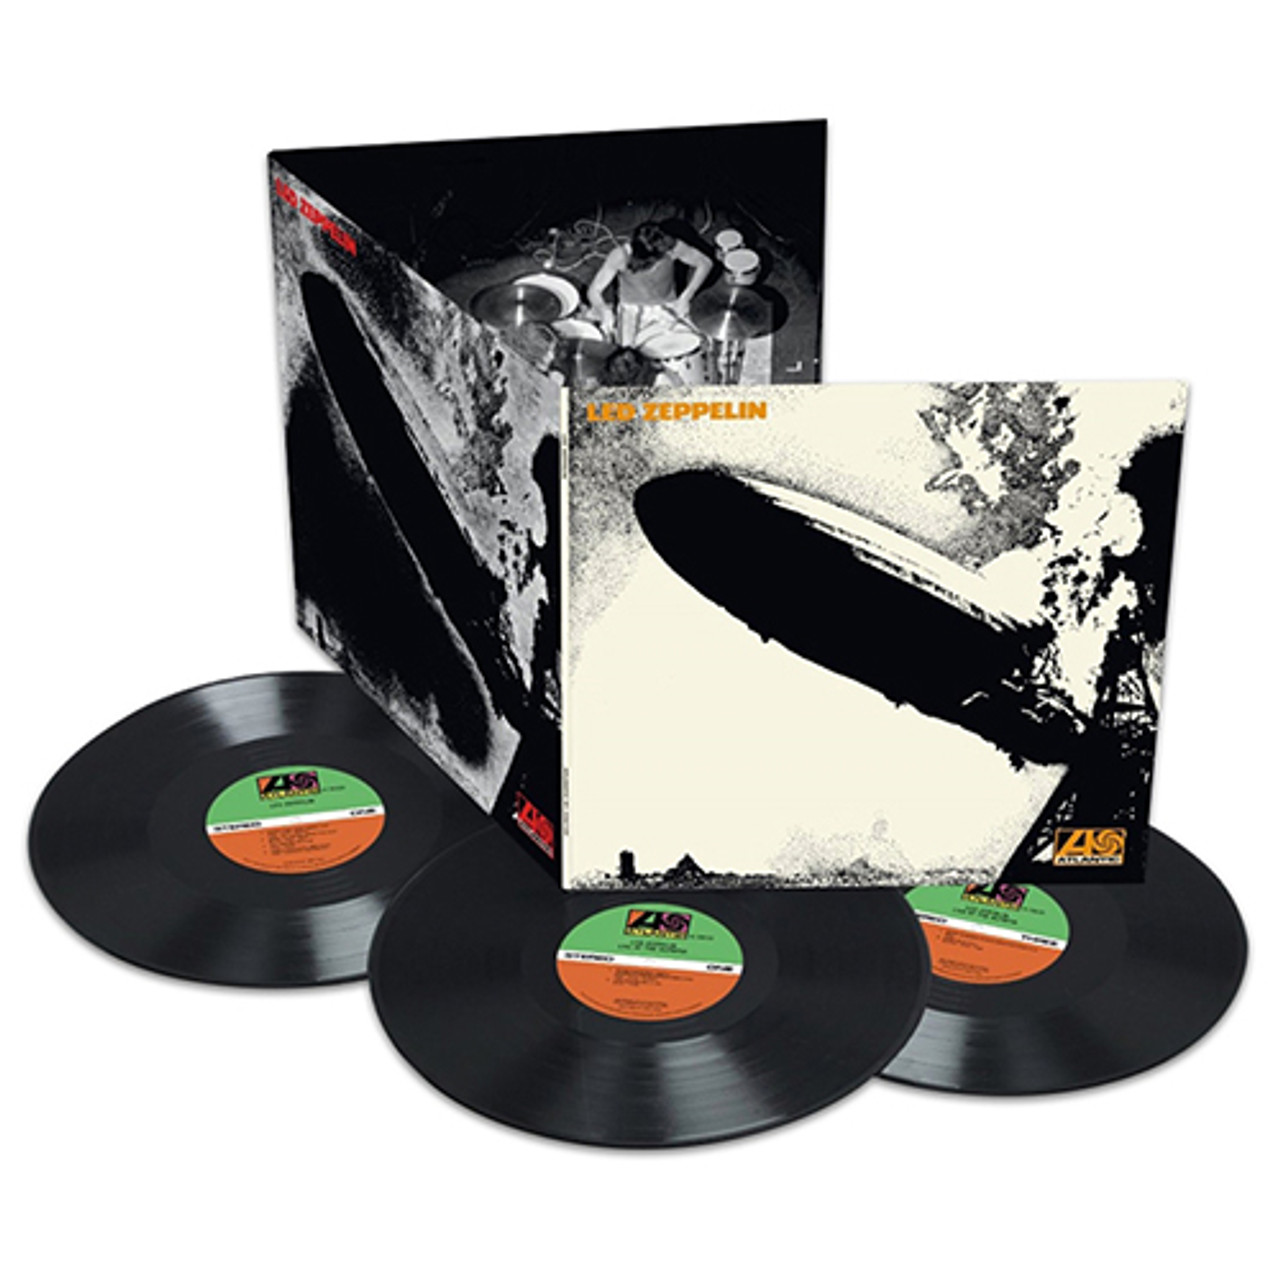 Hejse tak skal du have Opdage Led Zeppelin - Led Zeppelin I: Deluxe Edition (180G Vinyl 3LP) * * * -  Music Direct